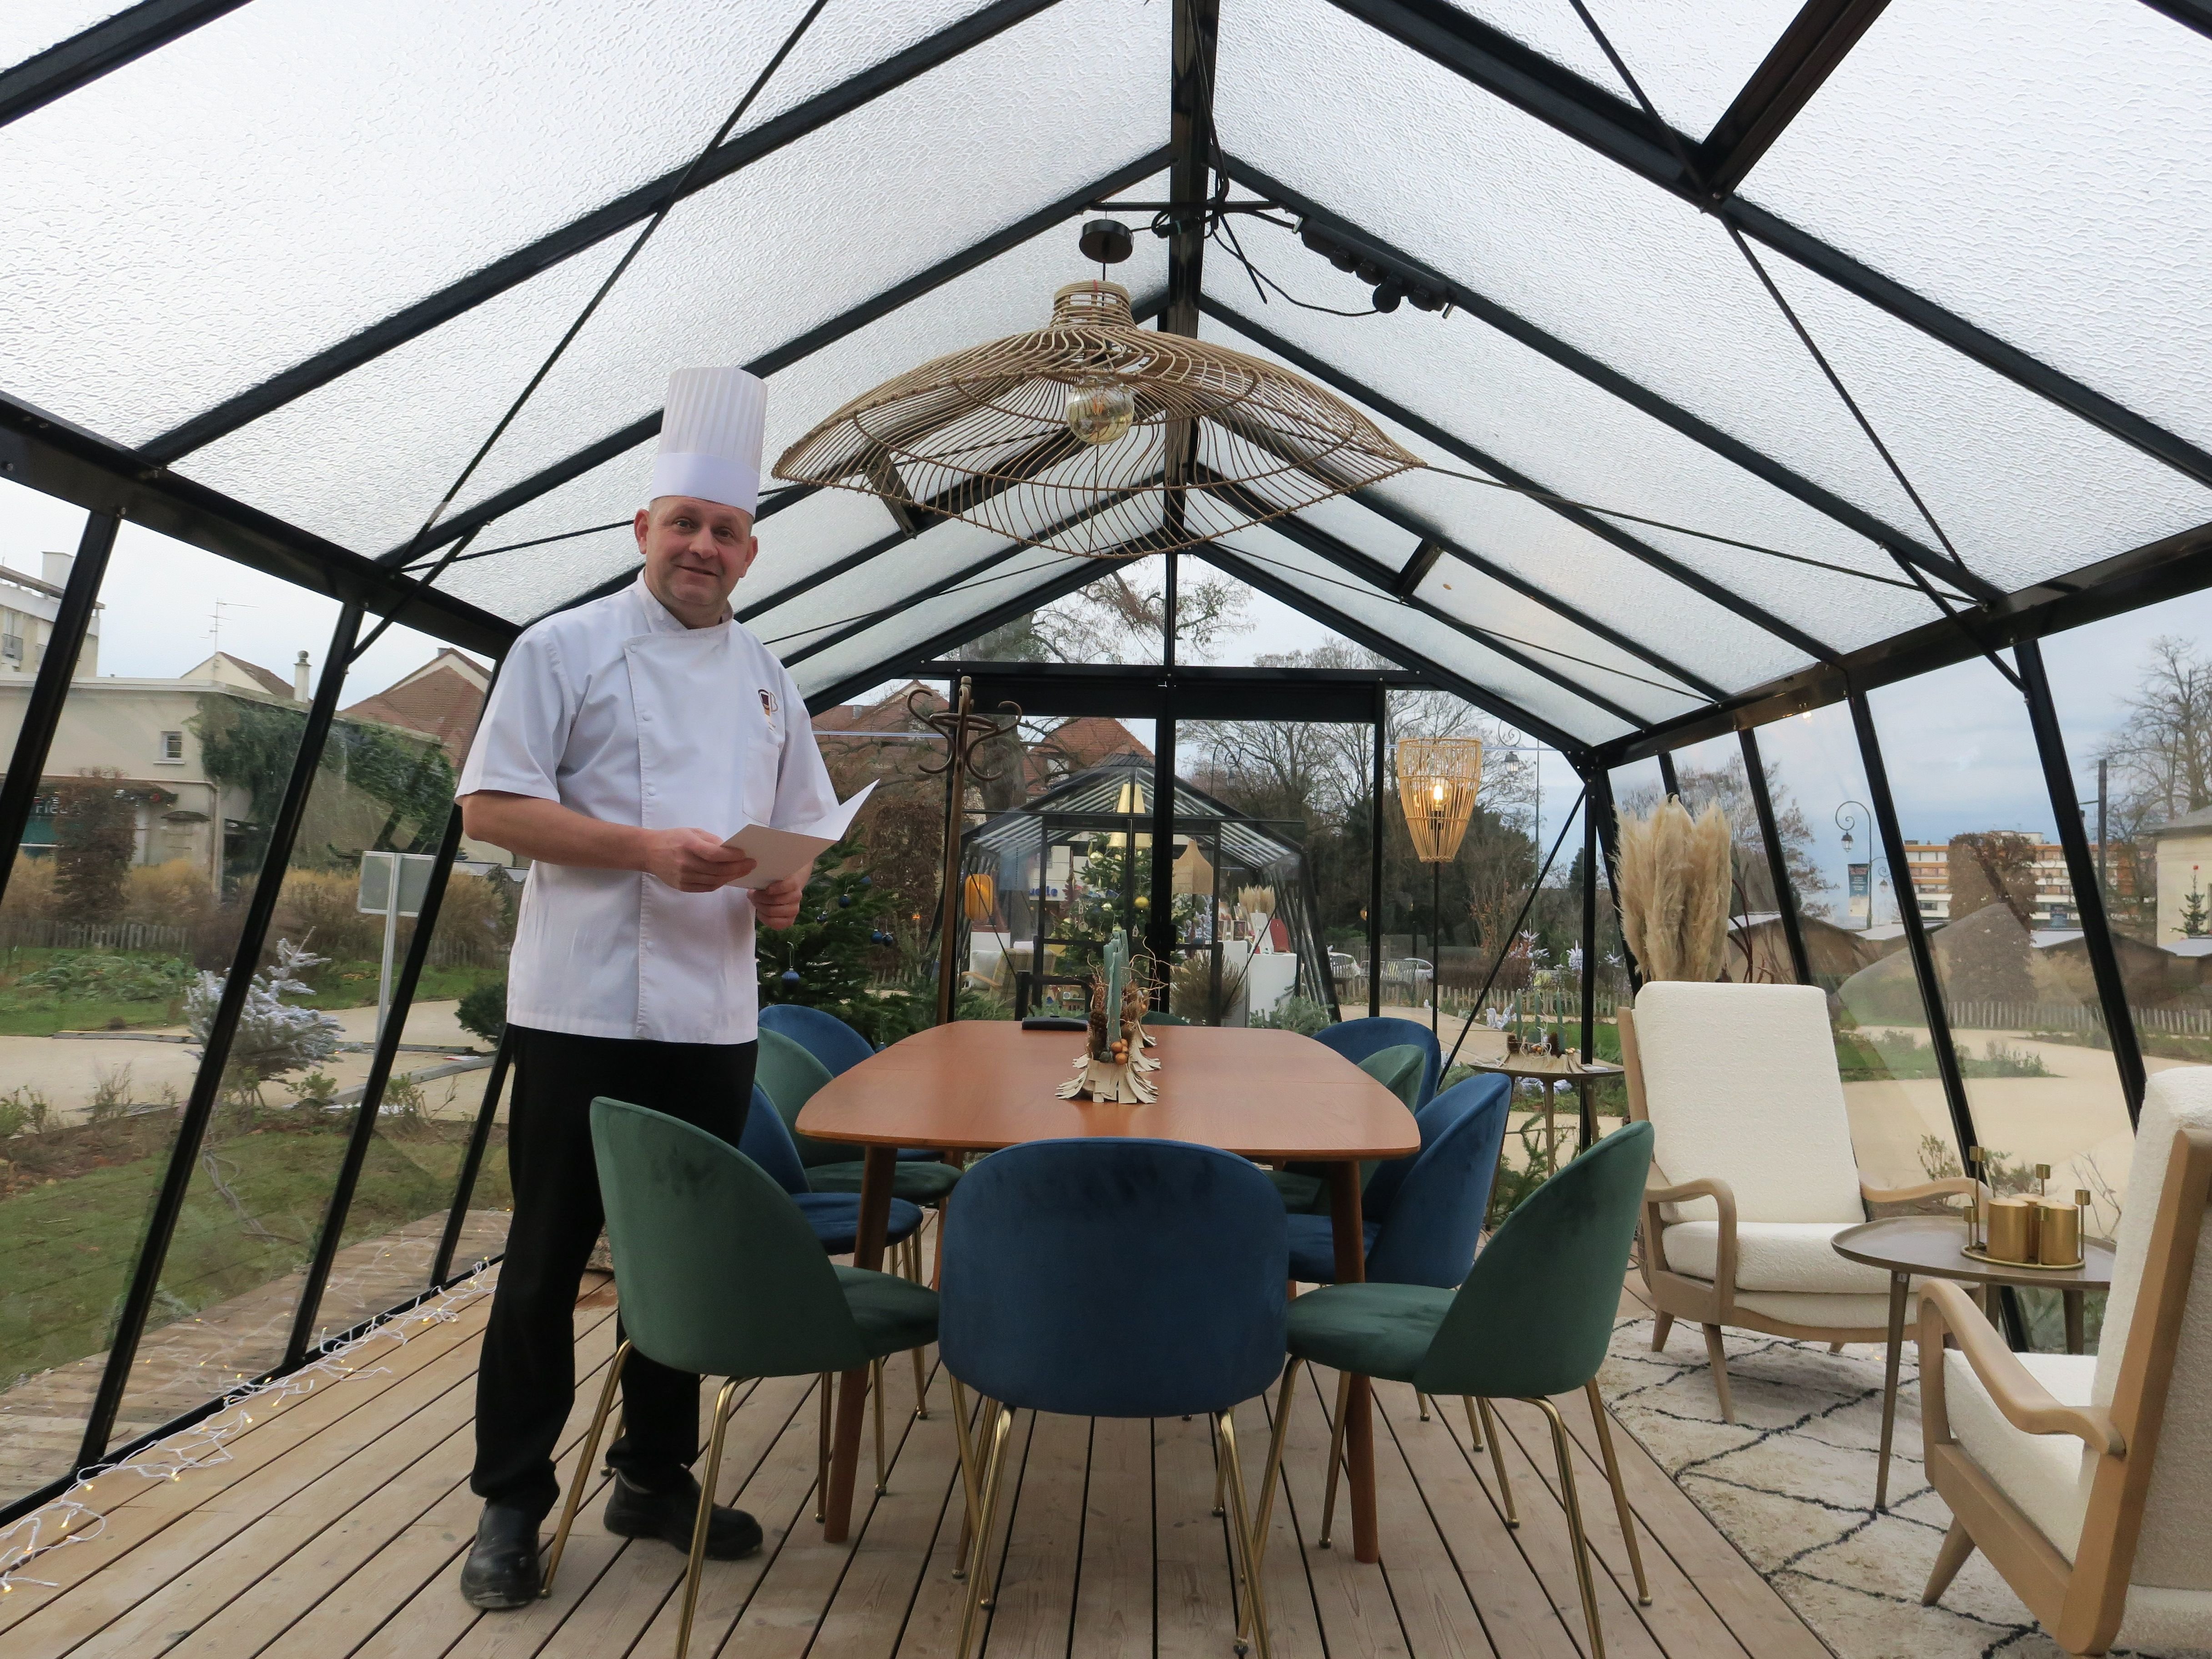 Sucy-en-Brie (Val-de-Marne), le 19 décembre 2022. Cyrille Billot a ouvert un restaurant éphémère dans une serre face au château, le temps des fêtes, avant de lancer son véritable restaurant. LP/Laure Parny